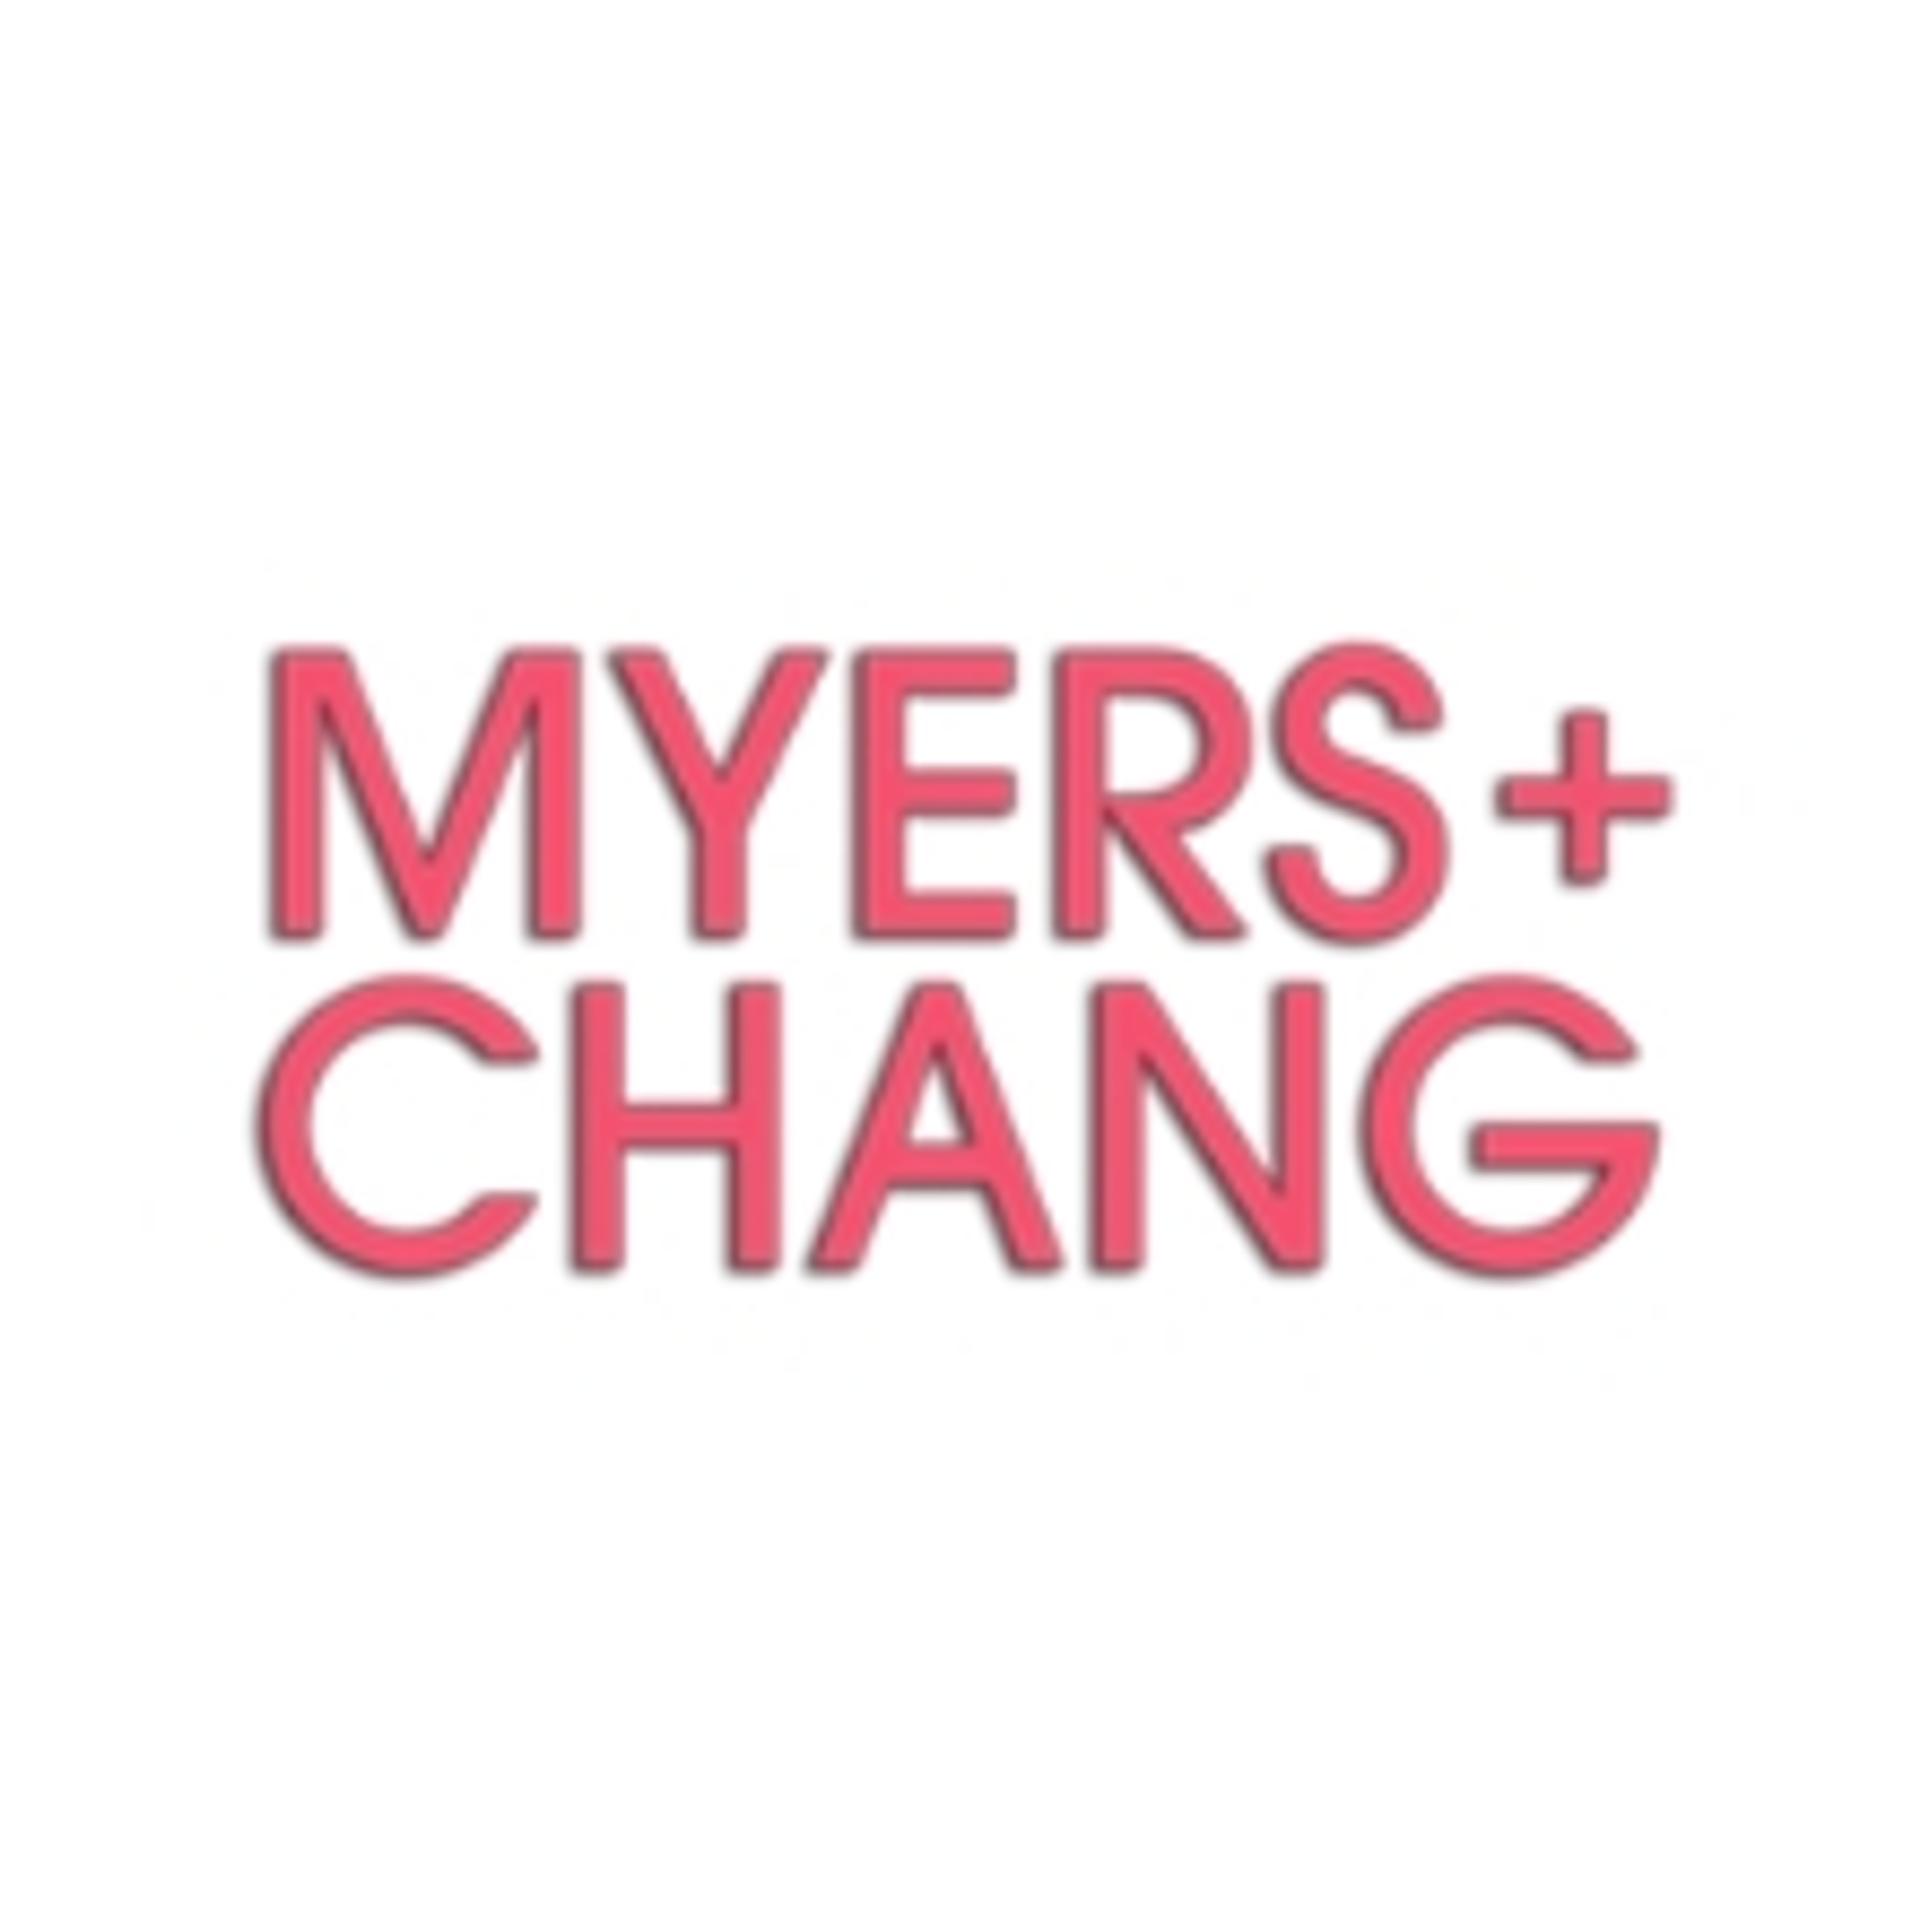 myers + chang